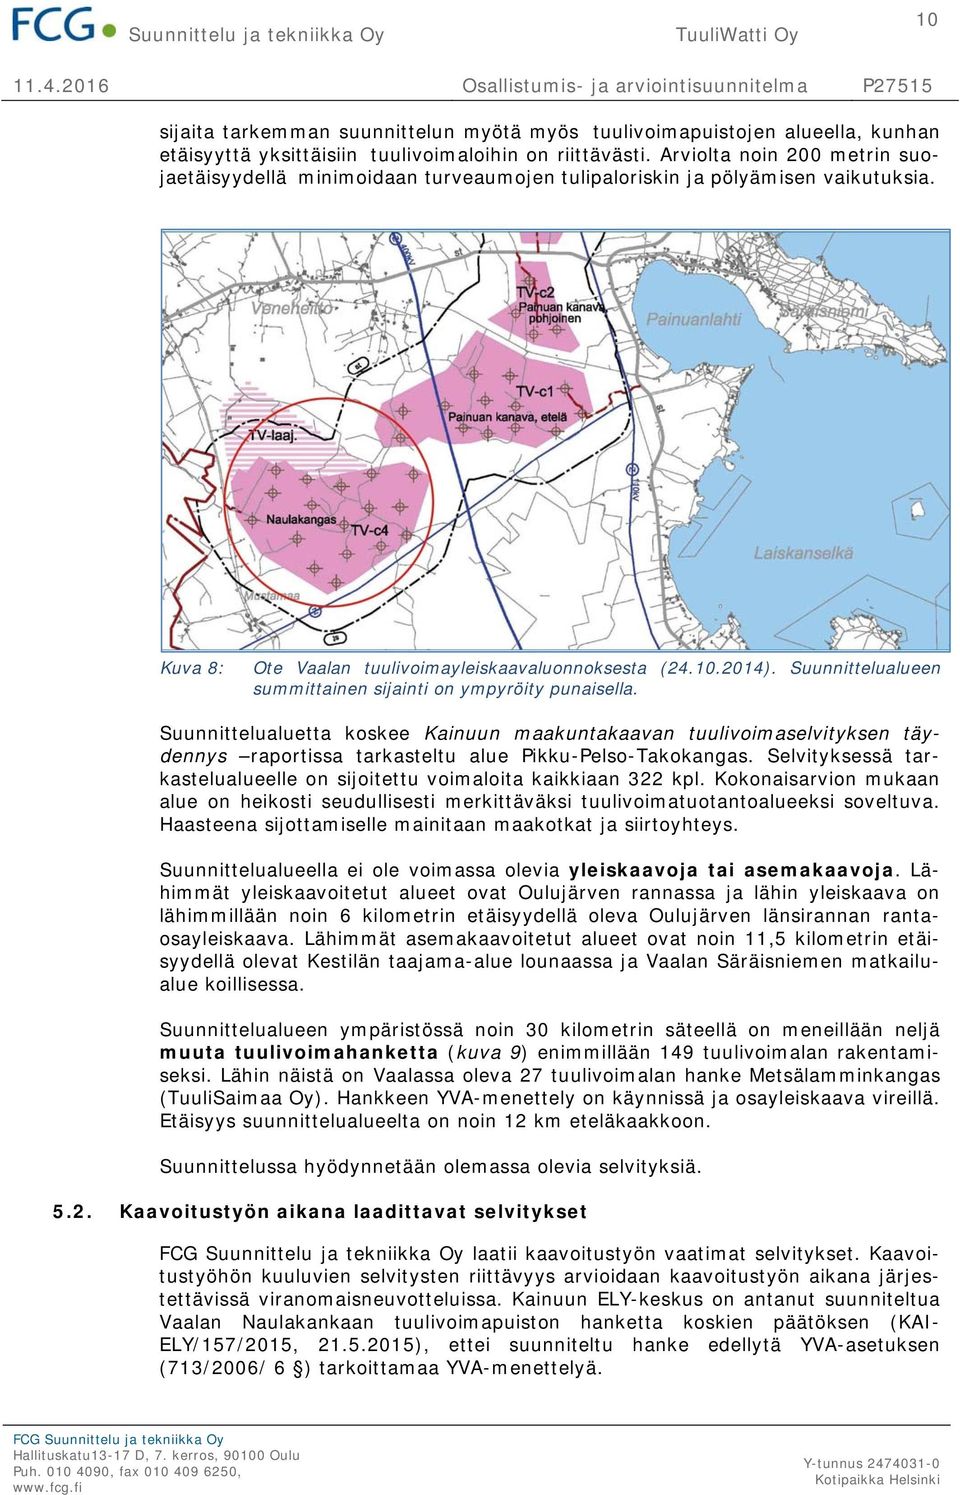 Suunnittelualueen summittainen sijainti on ympyröity punaisella. Suunnittelualuetta koskee Kainuun maakuntakaavan tuulivoimaselvityksen täydennys raportissa tarkasteltu alue Pikku-Pelso-Takokangas.